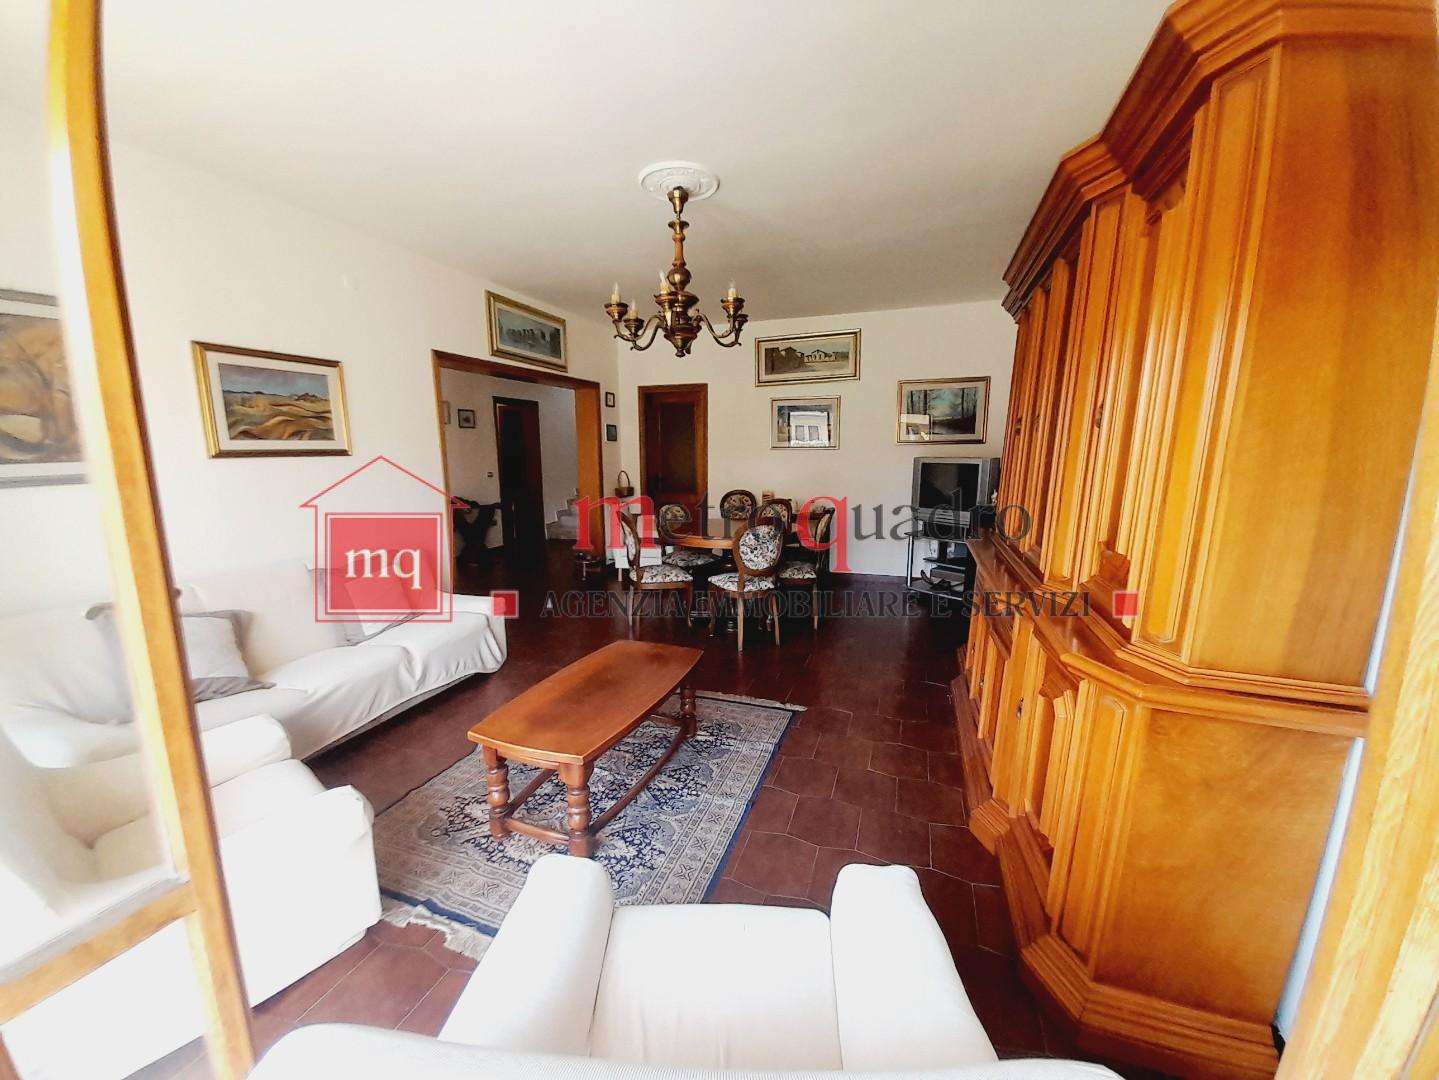 Casa Bi - Trifamiliare in Vendita a Pisa Via Livornese,